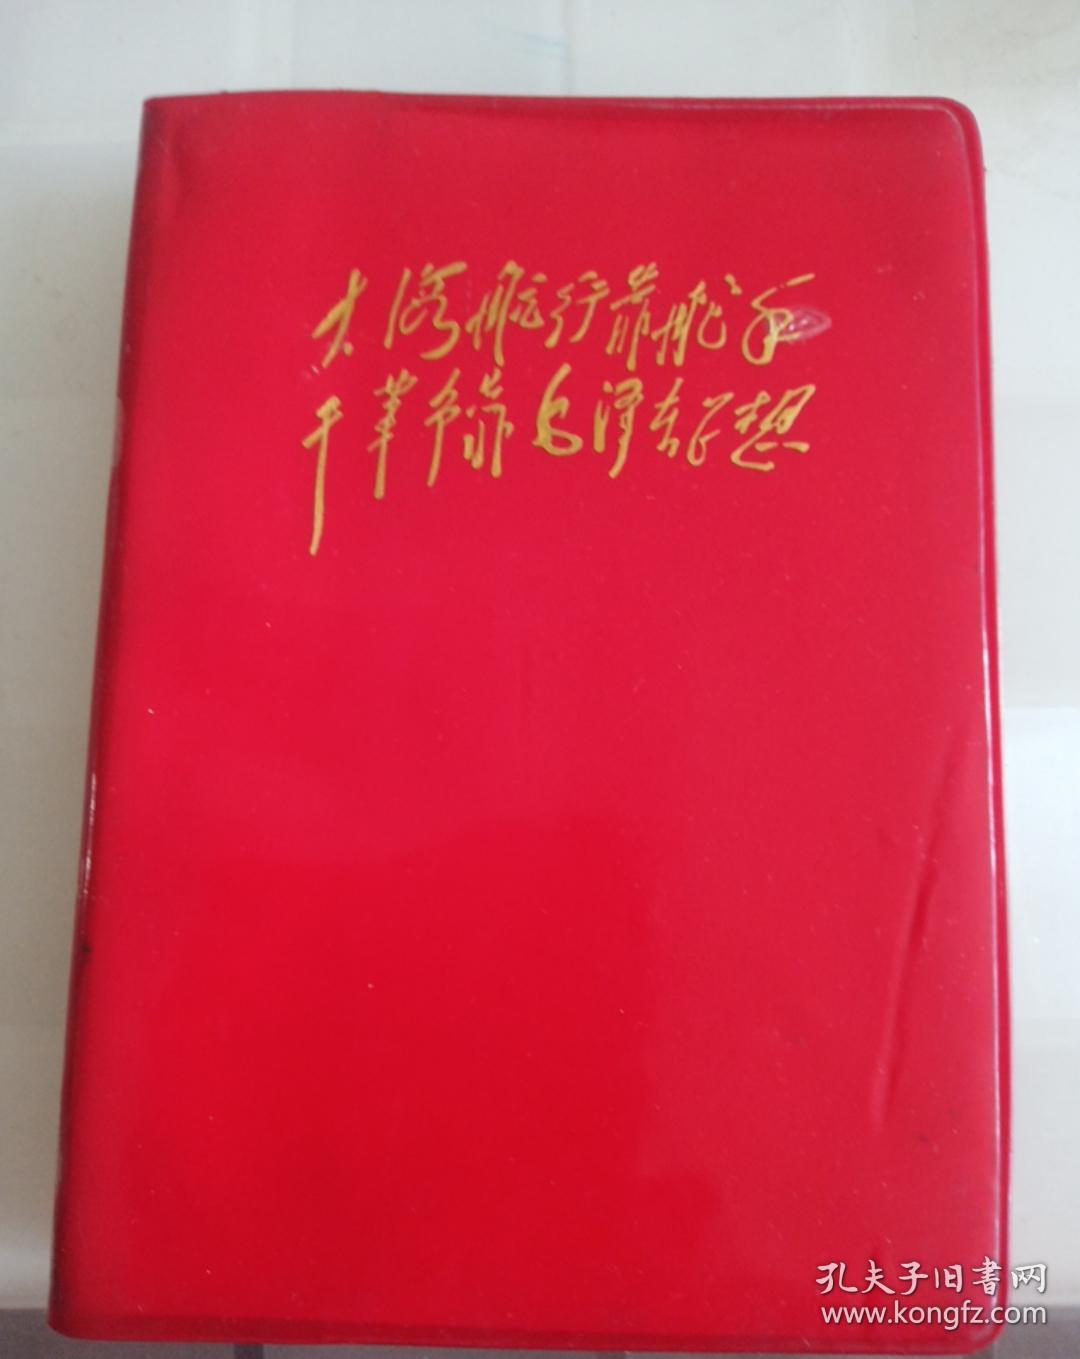 林彪题词红塑料笔记本